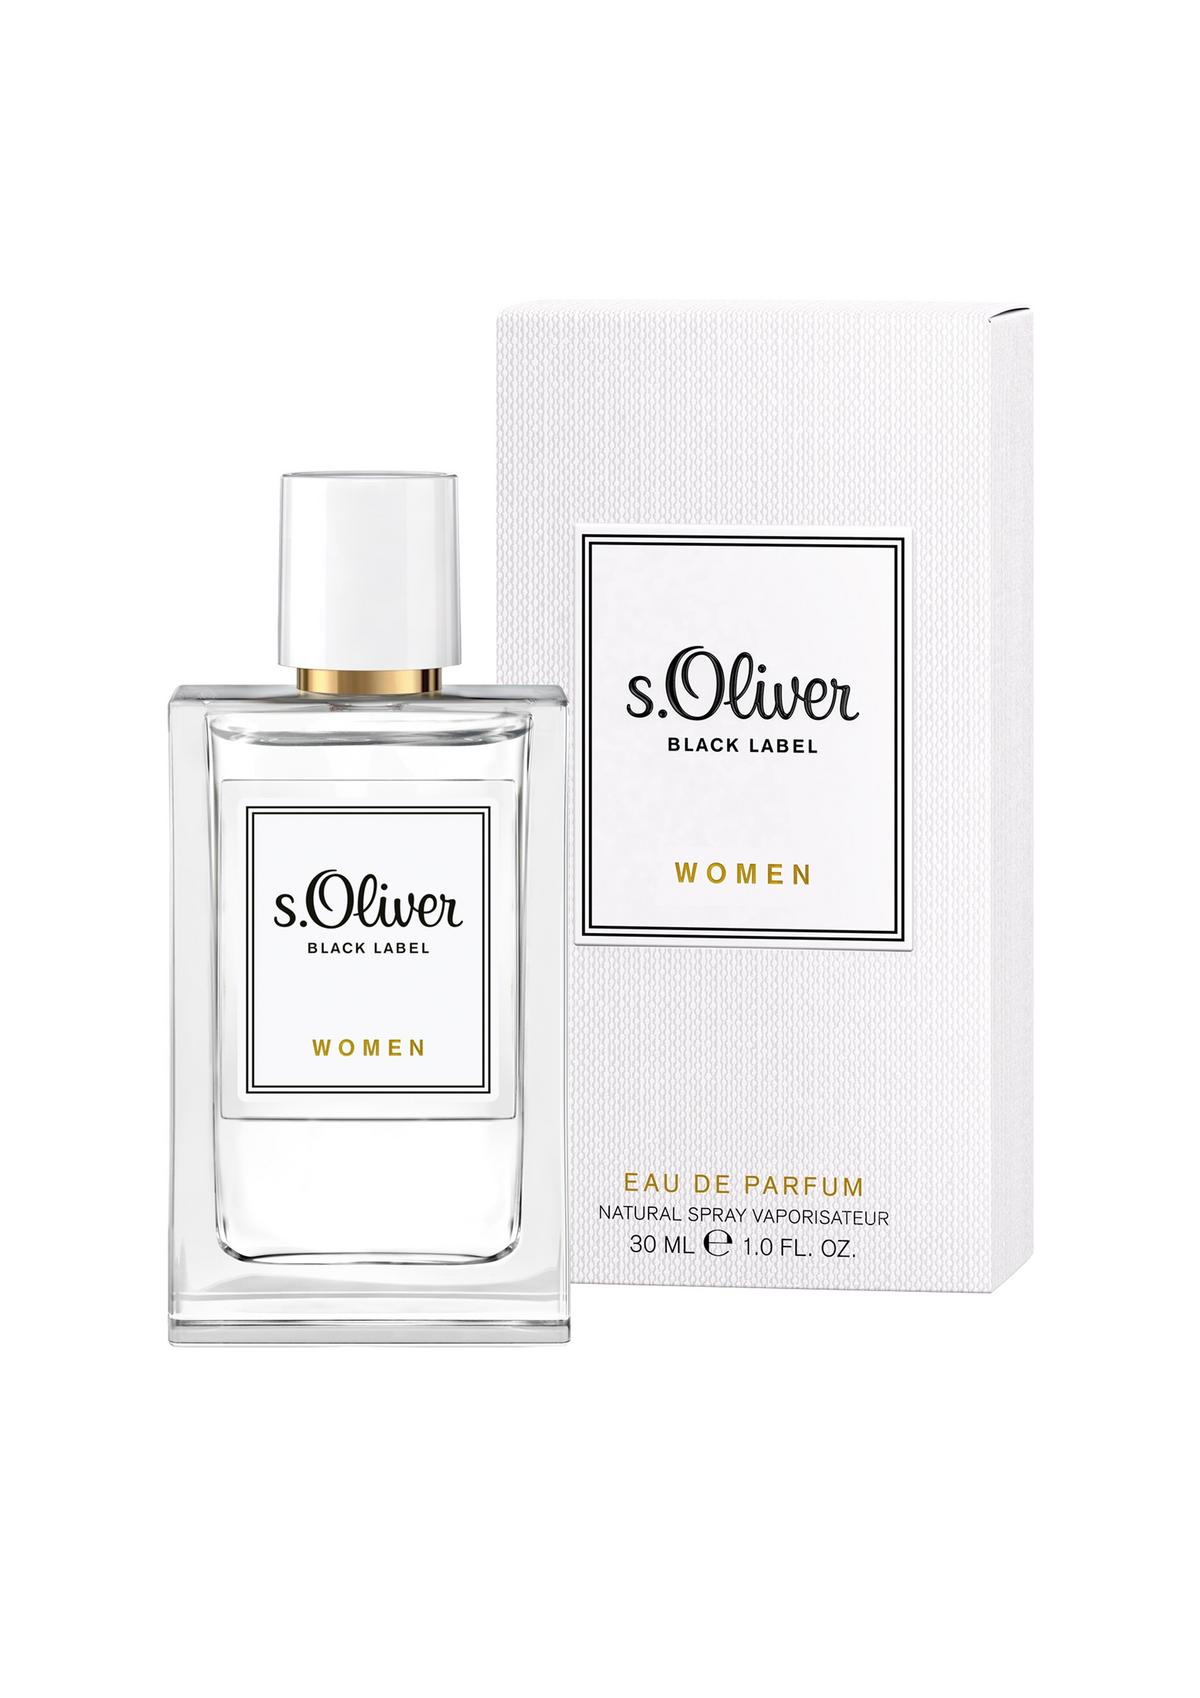 s.Oliver Black Label Women Eau de Parfum 30 ml